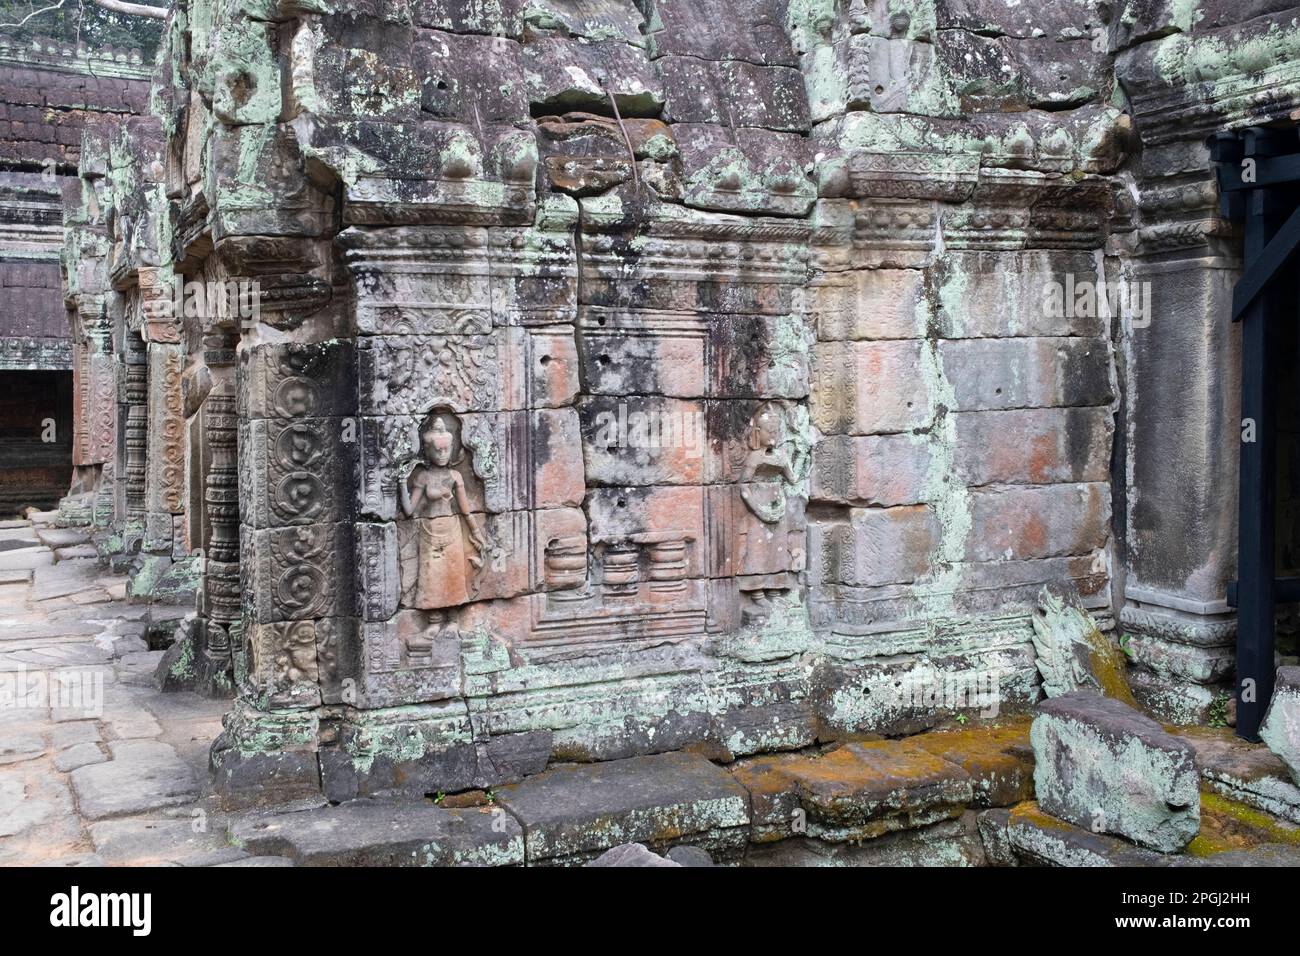 Cambogia: Cambogia: Devata (divinità femminile) adornano le mura di Preah Khan (Tempio della Sacra spada). Preah Khan è stato costruito nel tardo 12th ° secolo (1191) da Jayavarman VII e si trova appena a nord di Angkor Thom. Il tempio fu costruito sul luogo della vittoria di Jayavarman VII sui Chams invasori nel 1191. Era il centro di una grande organizzazione, con quasi 100.000 funzionari e funzionari. In un tempo era un'università buddista. La divinità primaria del tempio è la boddhisatva Avalokiteshvara, nella forma del padre di Jayavarman. Foto Stock